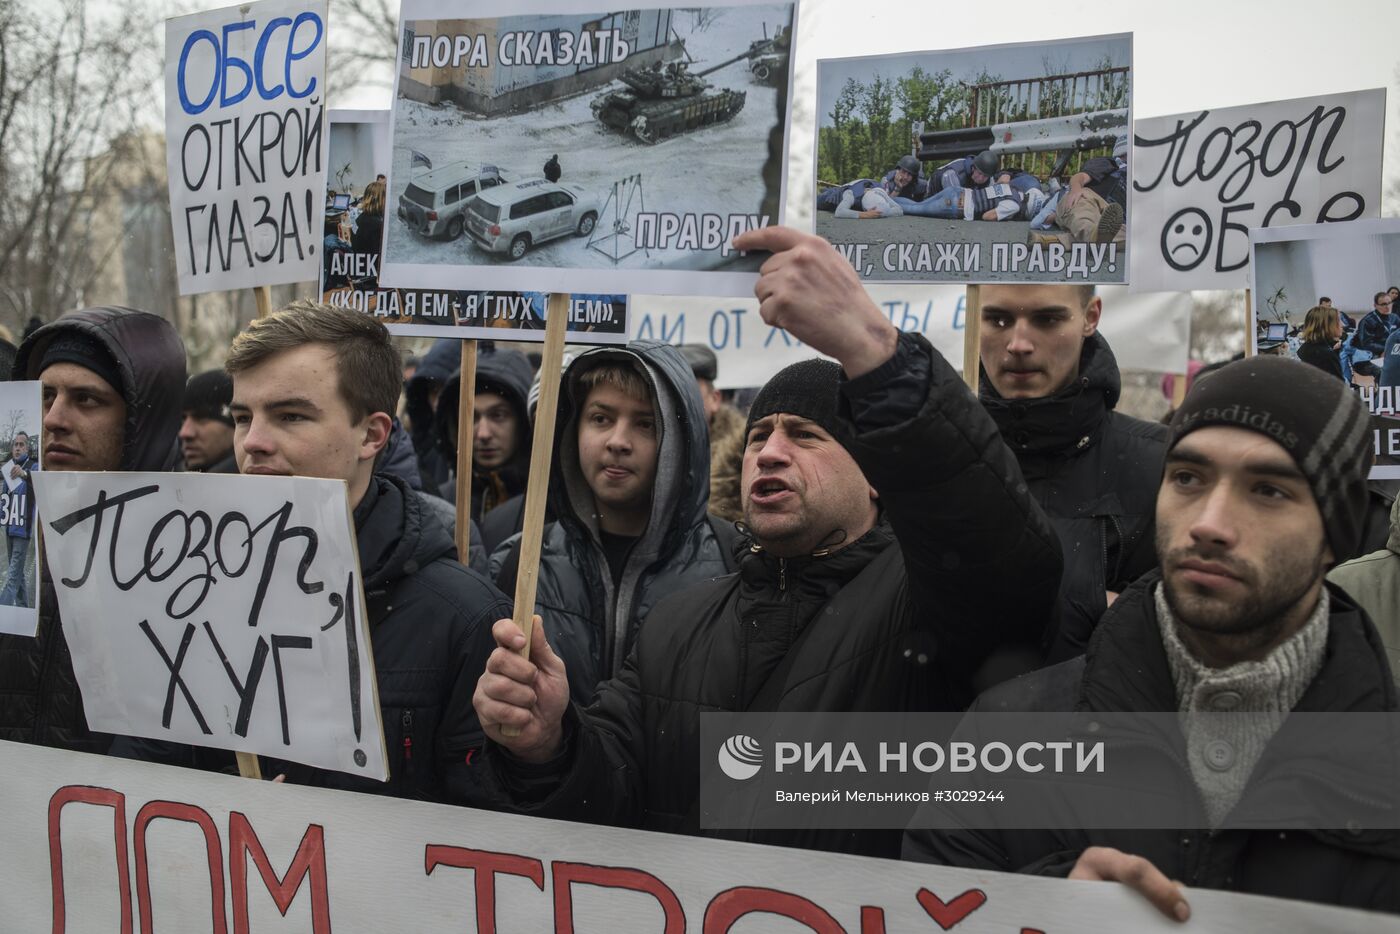 Митинг жителей Донецка против необъективной работы миссии ОБСЕ на Донбассе